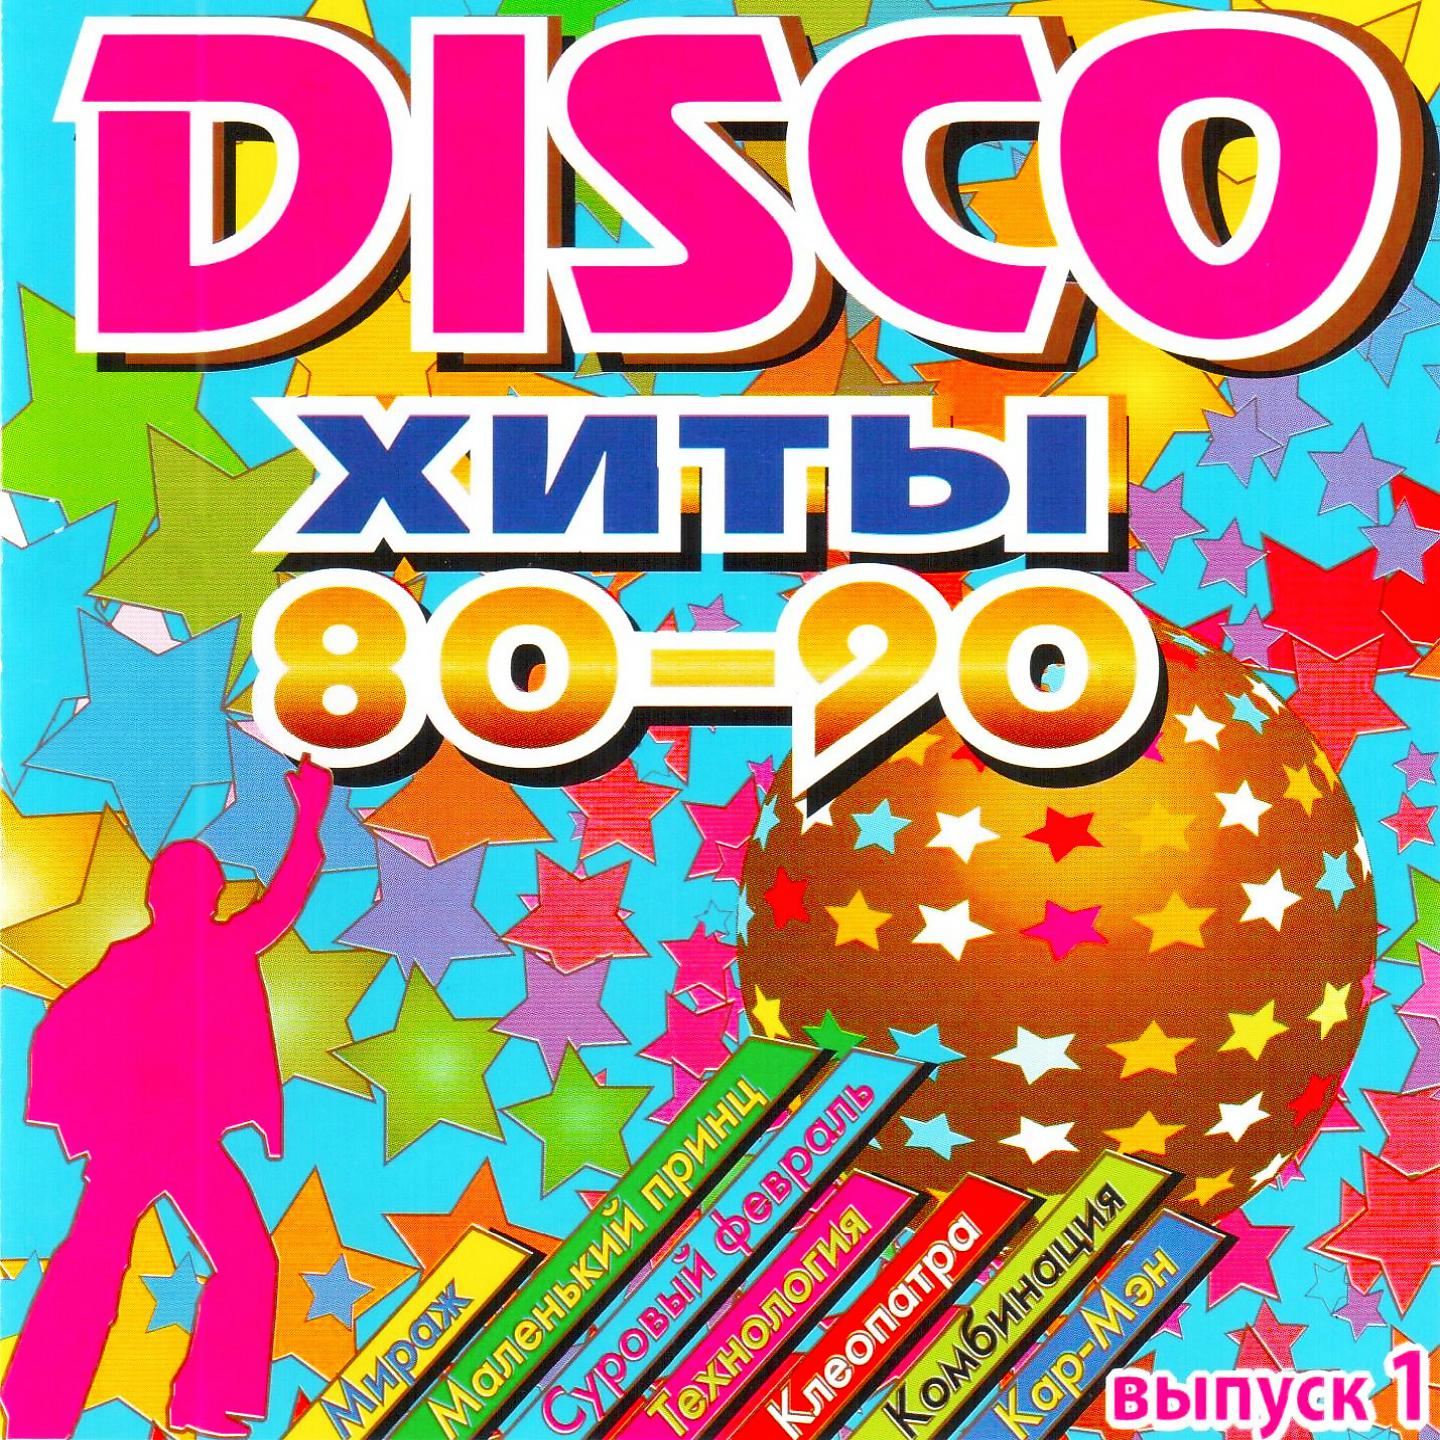 Альбом DISCO Хиты 80-90-Х, Ч. 1 - Various Artists - Слушать Все.